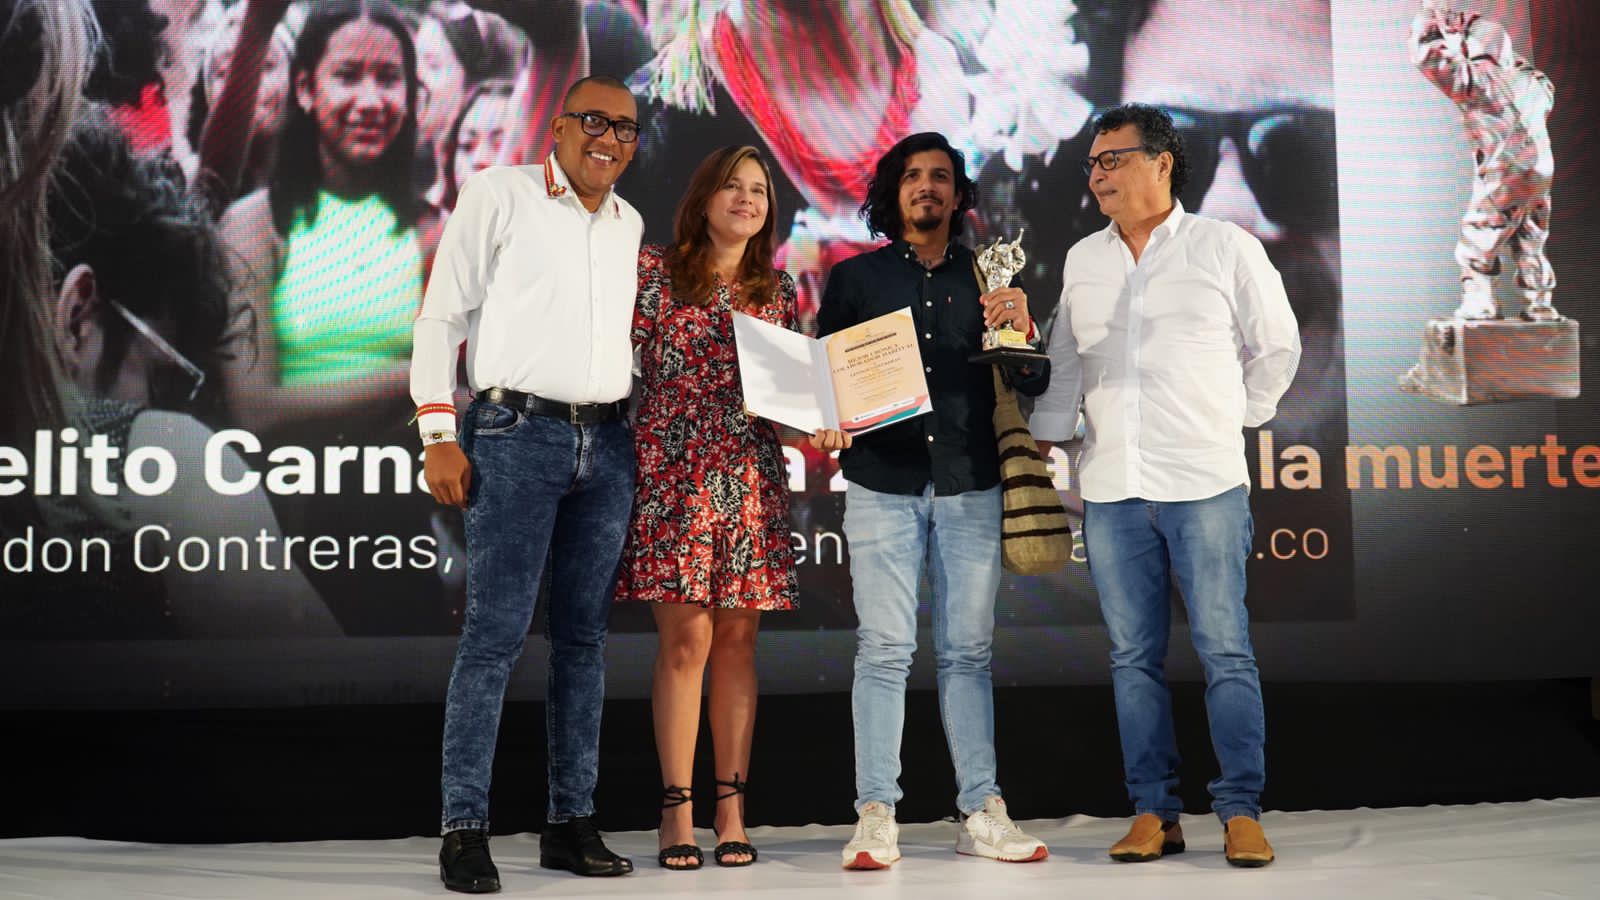 El premio Colaborador Habitual lo recibió Leydon Contreras de LaCháchara.co;